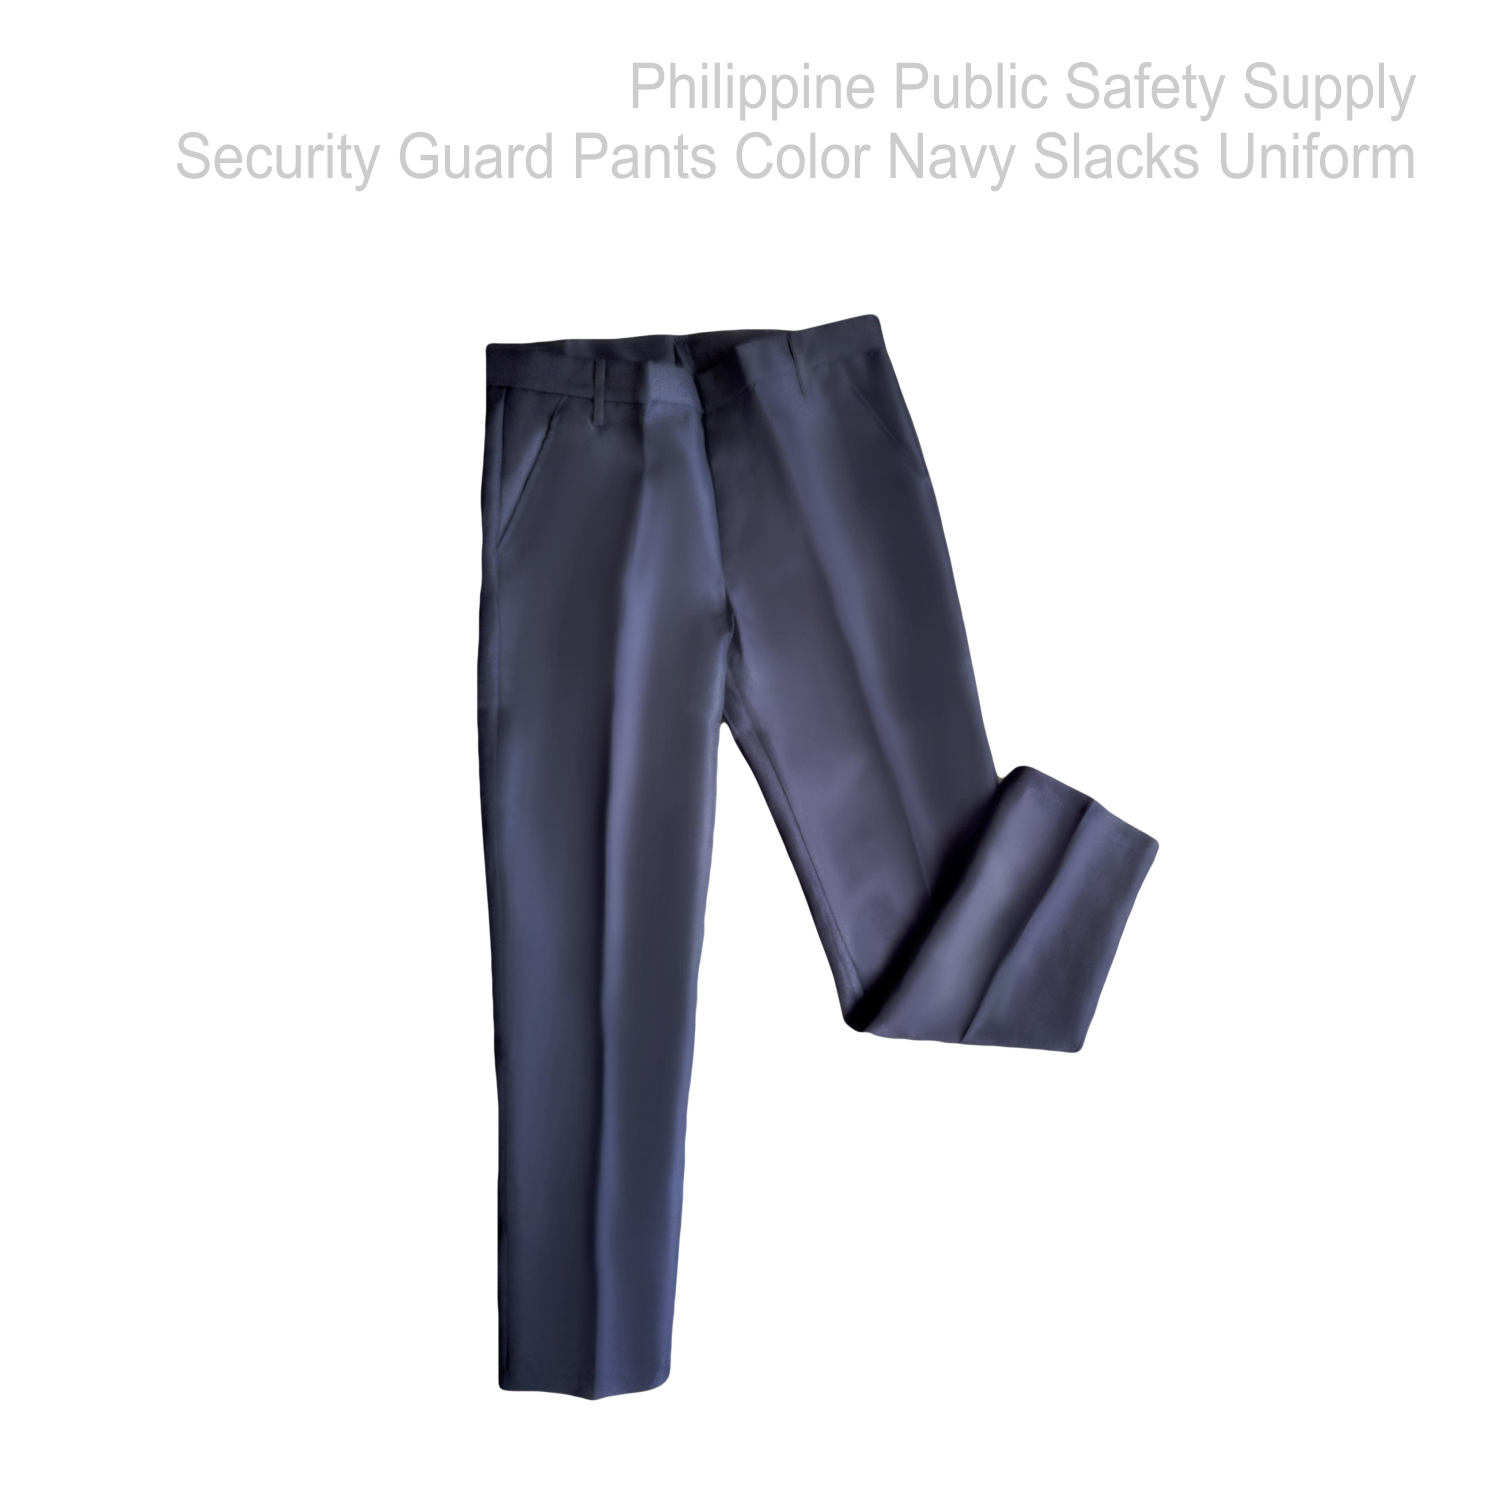  Security Guard Pants